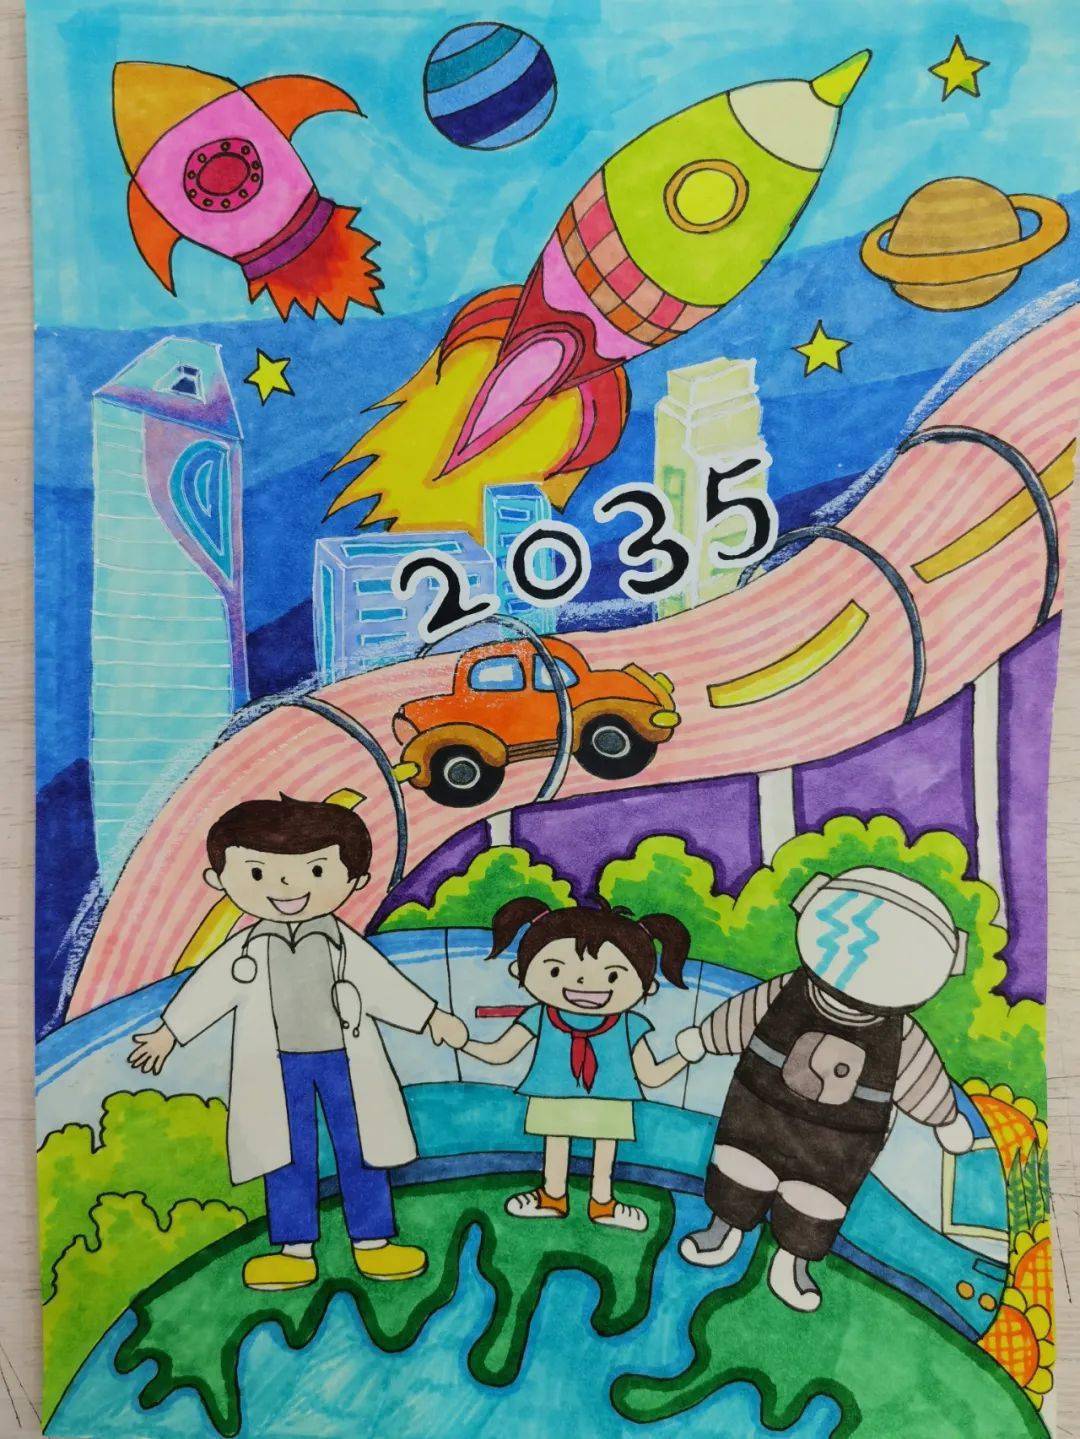 江苏省无锡市连元街小学开展"相约2035,畅想美好未来"